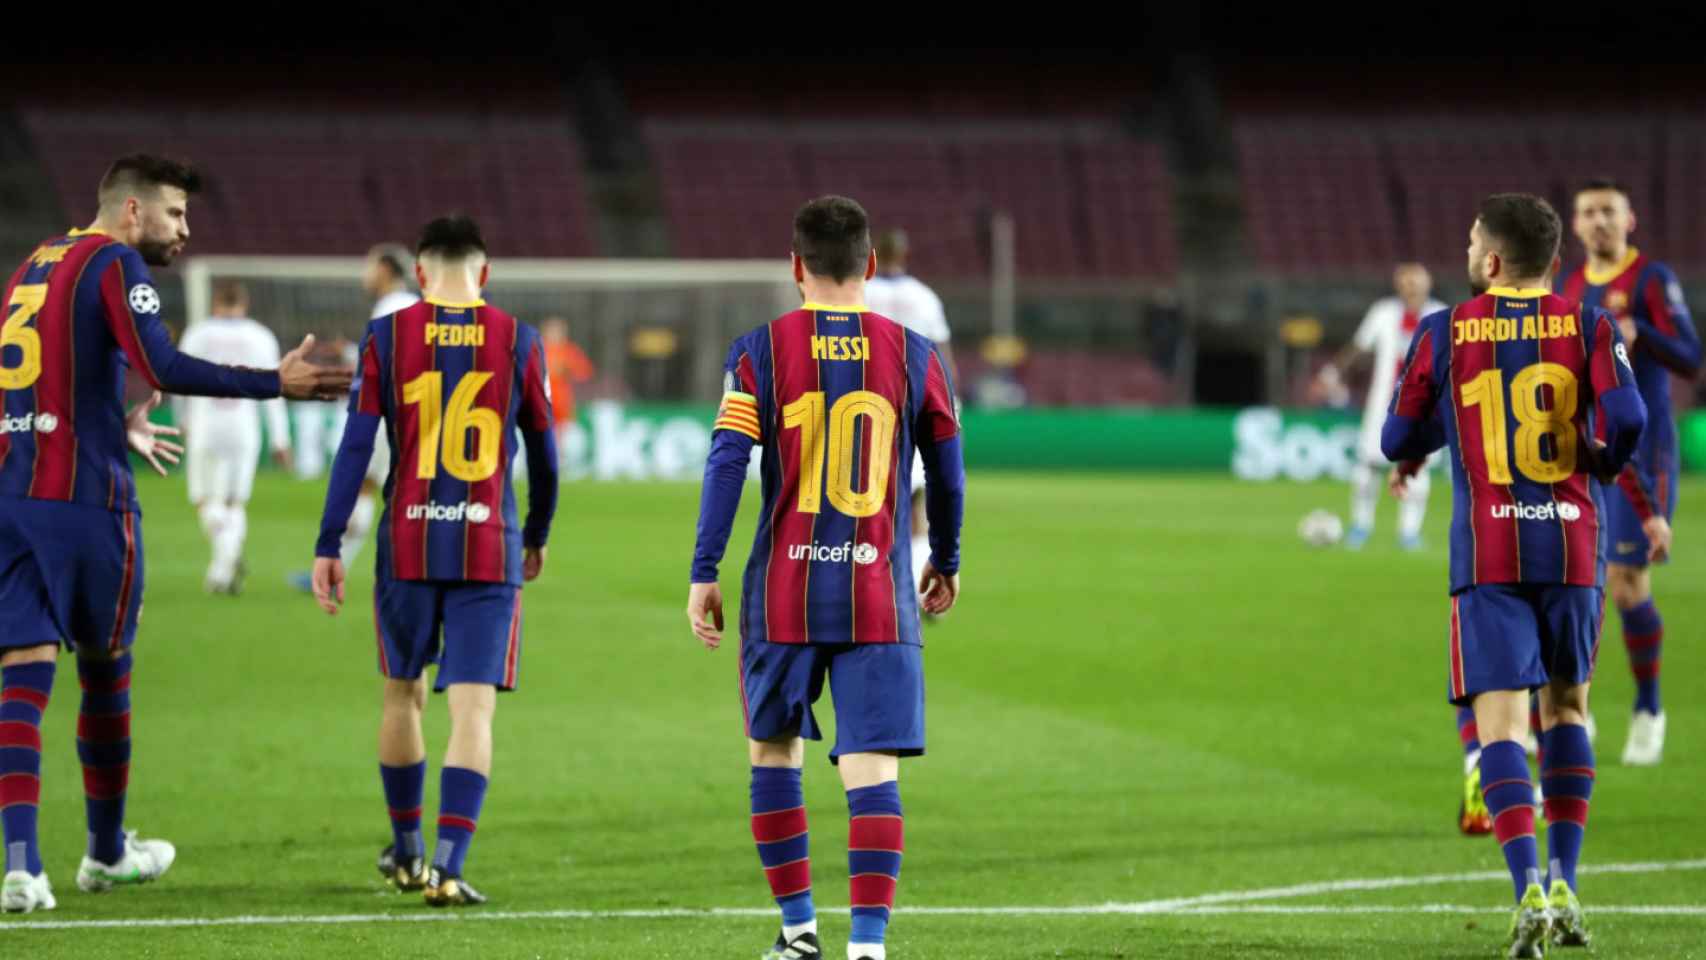 Leo Messi tras el gol del Barça contra el PSG / FC Barcelona